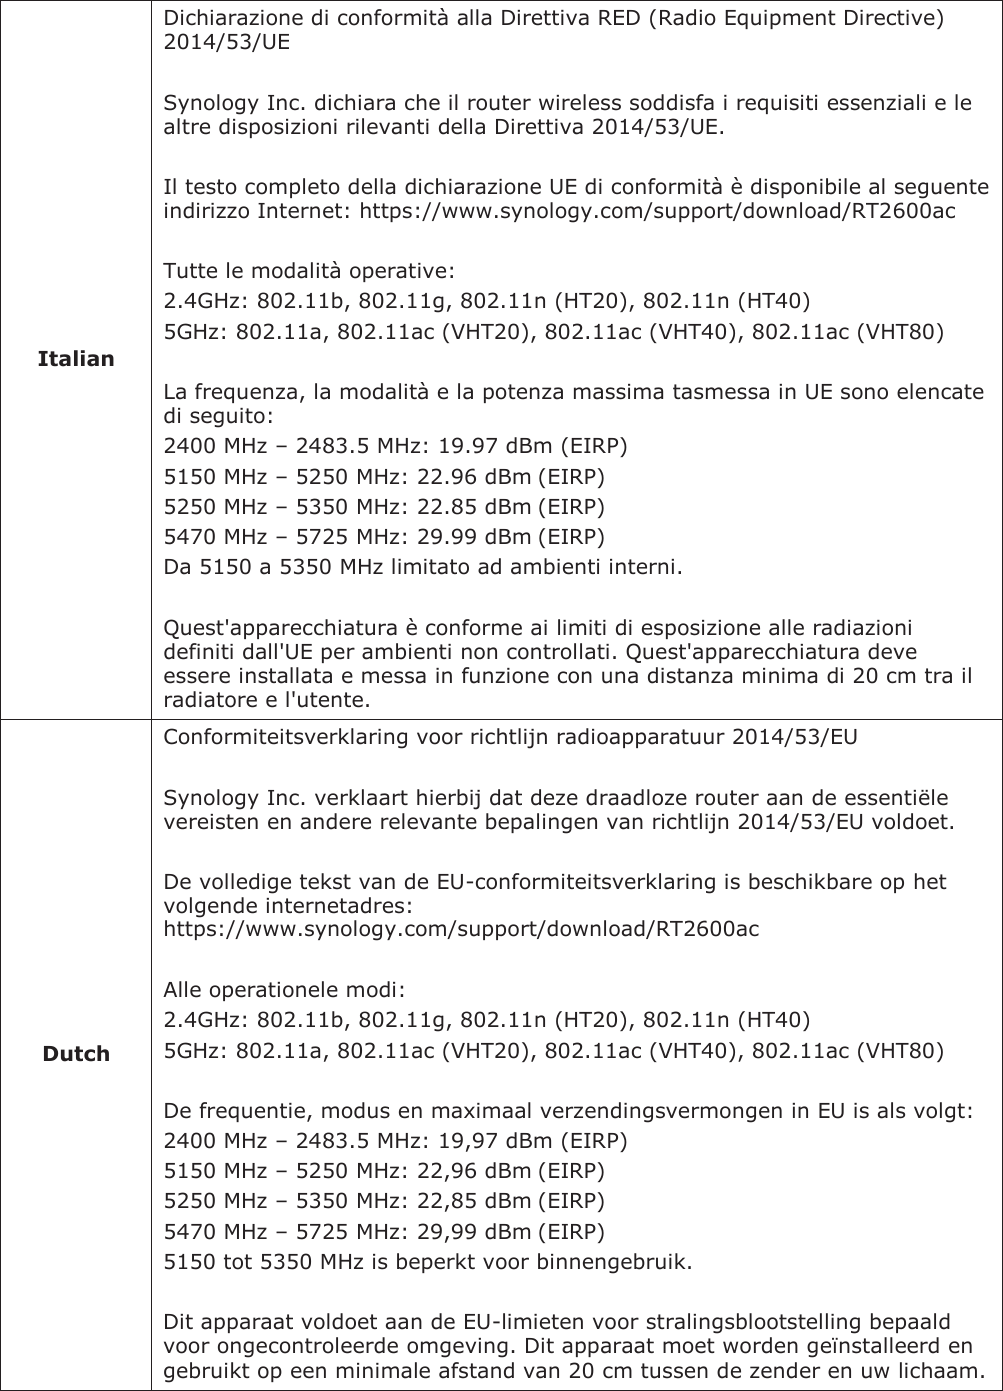            Italian Dichiarazione di conformità alla Direttiva RED (Radio Equipment Directive) 2014/53/UE  Synology Inc. dichiara che il router wireless soddisfa i requisiti essenziali e le altre disposizioni rilevanti della Direttiva 2014/53/UE.  Il testo completo della dichiarazione UE di conformità è disponibile al seguente indirizzo Internet: https://www.synology.com/support/download/RT2600ac  Tutte le modalità operative: 2.4GHz: 802.11b, 802.11g, 802.11n (HT20), 802.11n (HT40) 5GHz: 802.11a, 802.11ac (VHT20), 802.11ac (VHT40), 802.11ac (VHT80)  La frequenza, la modalità e la potenza massima tasmessa in UE sono elencate di seguito: 2400 MHz – 2483.5 MHz: 19.97 dBm (EIRP) 5150 MHz – 5250 MHz: 22.96 dBm (EIRP) 5250 MHz – 5350 MHz: 22.85 dBm (EIRP) 5470 MHz – 5725 MHz: 29.99 dBm (EIRP) Da 5150 a 5350 MHz limitato ad ambienti interni.  Quest&apos;apparecchiatura è conforme ai limiti di esposizione alle radiazioni definiti dall&apos;UE per ambienti non controllati. Quest&apos;apparecchiatura deve essere installata e messa in funzione con una distanza minima di 20 cm tra il radiatore e l&apos;utente.           Dutch Conformiteitsverklaring voor richtlijn radioapparatuur 2014/53/EU  Synology Inc. verklaart hierbij dat deze draadloze router aan de essentiële vereisten en andere relevante bepalingen van richtlijn 2014/53/EU voldoet.  De volledige tekst van de EU-conformiteitsverklaring is beschikbare op het volgende internetadres: https://www.synology.com/support/download/RT2600ac  Alle operationele modi: 2.4GHz: 802.11b, 802.11g, 802.11n (HT20), 802.11n (HT40) 5GHz: 802.11a, 802.11ac (VHT20), 802.11ac (VHT40), 802.11ac (VHT80)  De frequentie, modus en maximaal verzendingsvermongen in EU is als volgt: 2400 MHz – 2483.5 MHz: 19,97 dBm (EIRP) 5150 MHz – 5250 MHz: 22,96 dBm (EIRP) 5250 MHz – 5350 MHz: 22,85 dBm (EIRP) 5470 MHz – 5725 MHz: 29,99 dBm (EIRP) 5150 tot 5350 MHz is beperkt voor binnengebruik.  Dit apparaat voldoet aan de EU-limieten voor stralingsblootstelling bepaald voor ongecontroleerde omgeving. Dit apparaat moet worden geïnstalleerd en gebruikt op een minimale afstand van 20 cm tussen de zender en uw lichaam. 